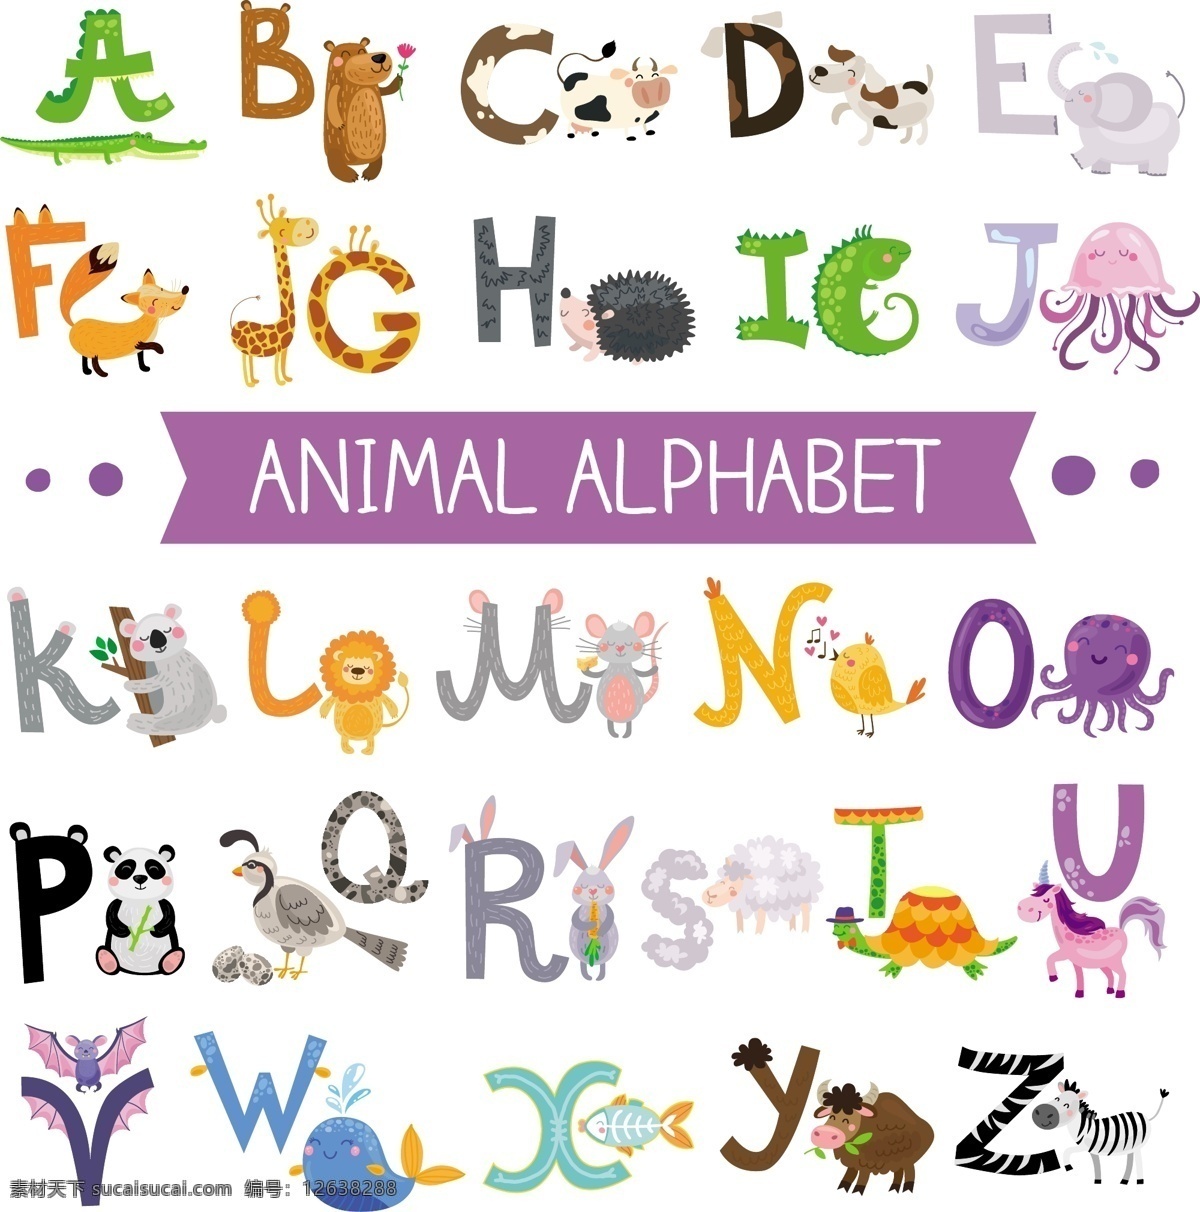 字母设计 手绘字母 彩色字母 26个英文字 大小写 字母标识 拼音 创意字母 字母 英文 英文字母 26个字母 立体字母 卡通字母 动物字母 数字 标点 符号 标点符号 卡通数字 立体数字 阿拉伯数字 平面素材